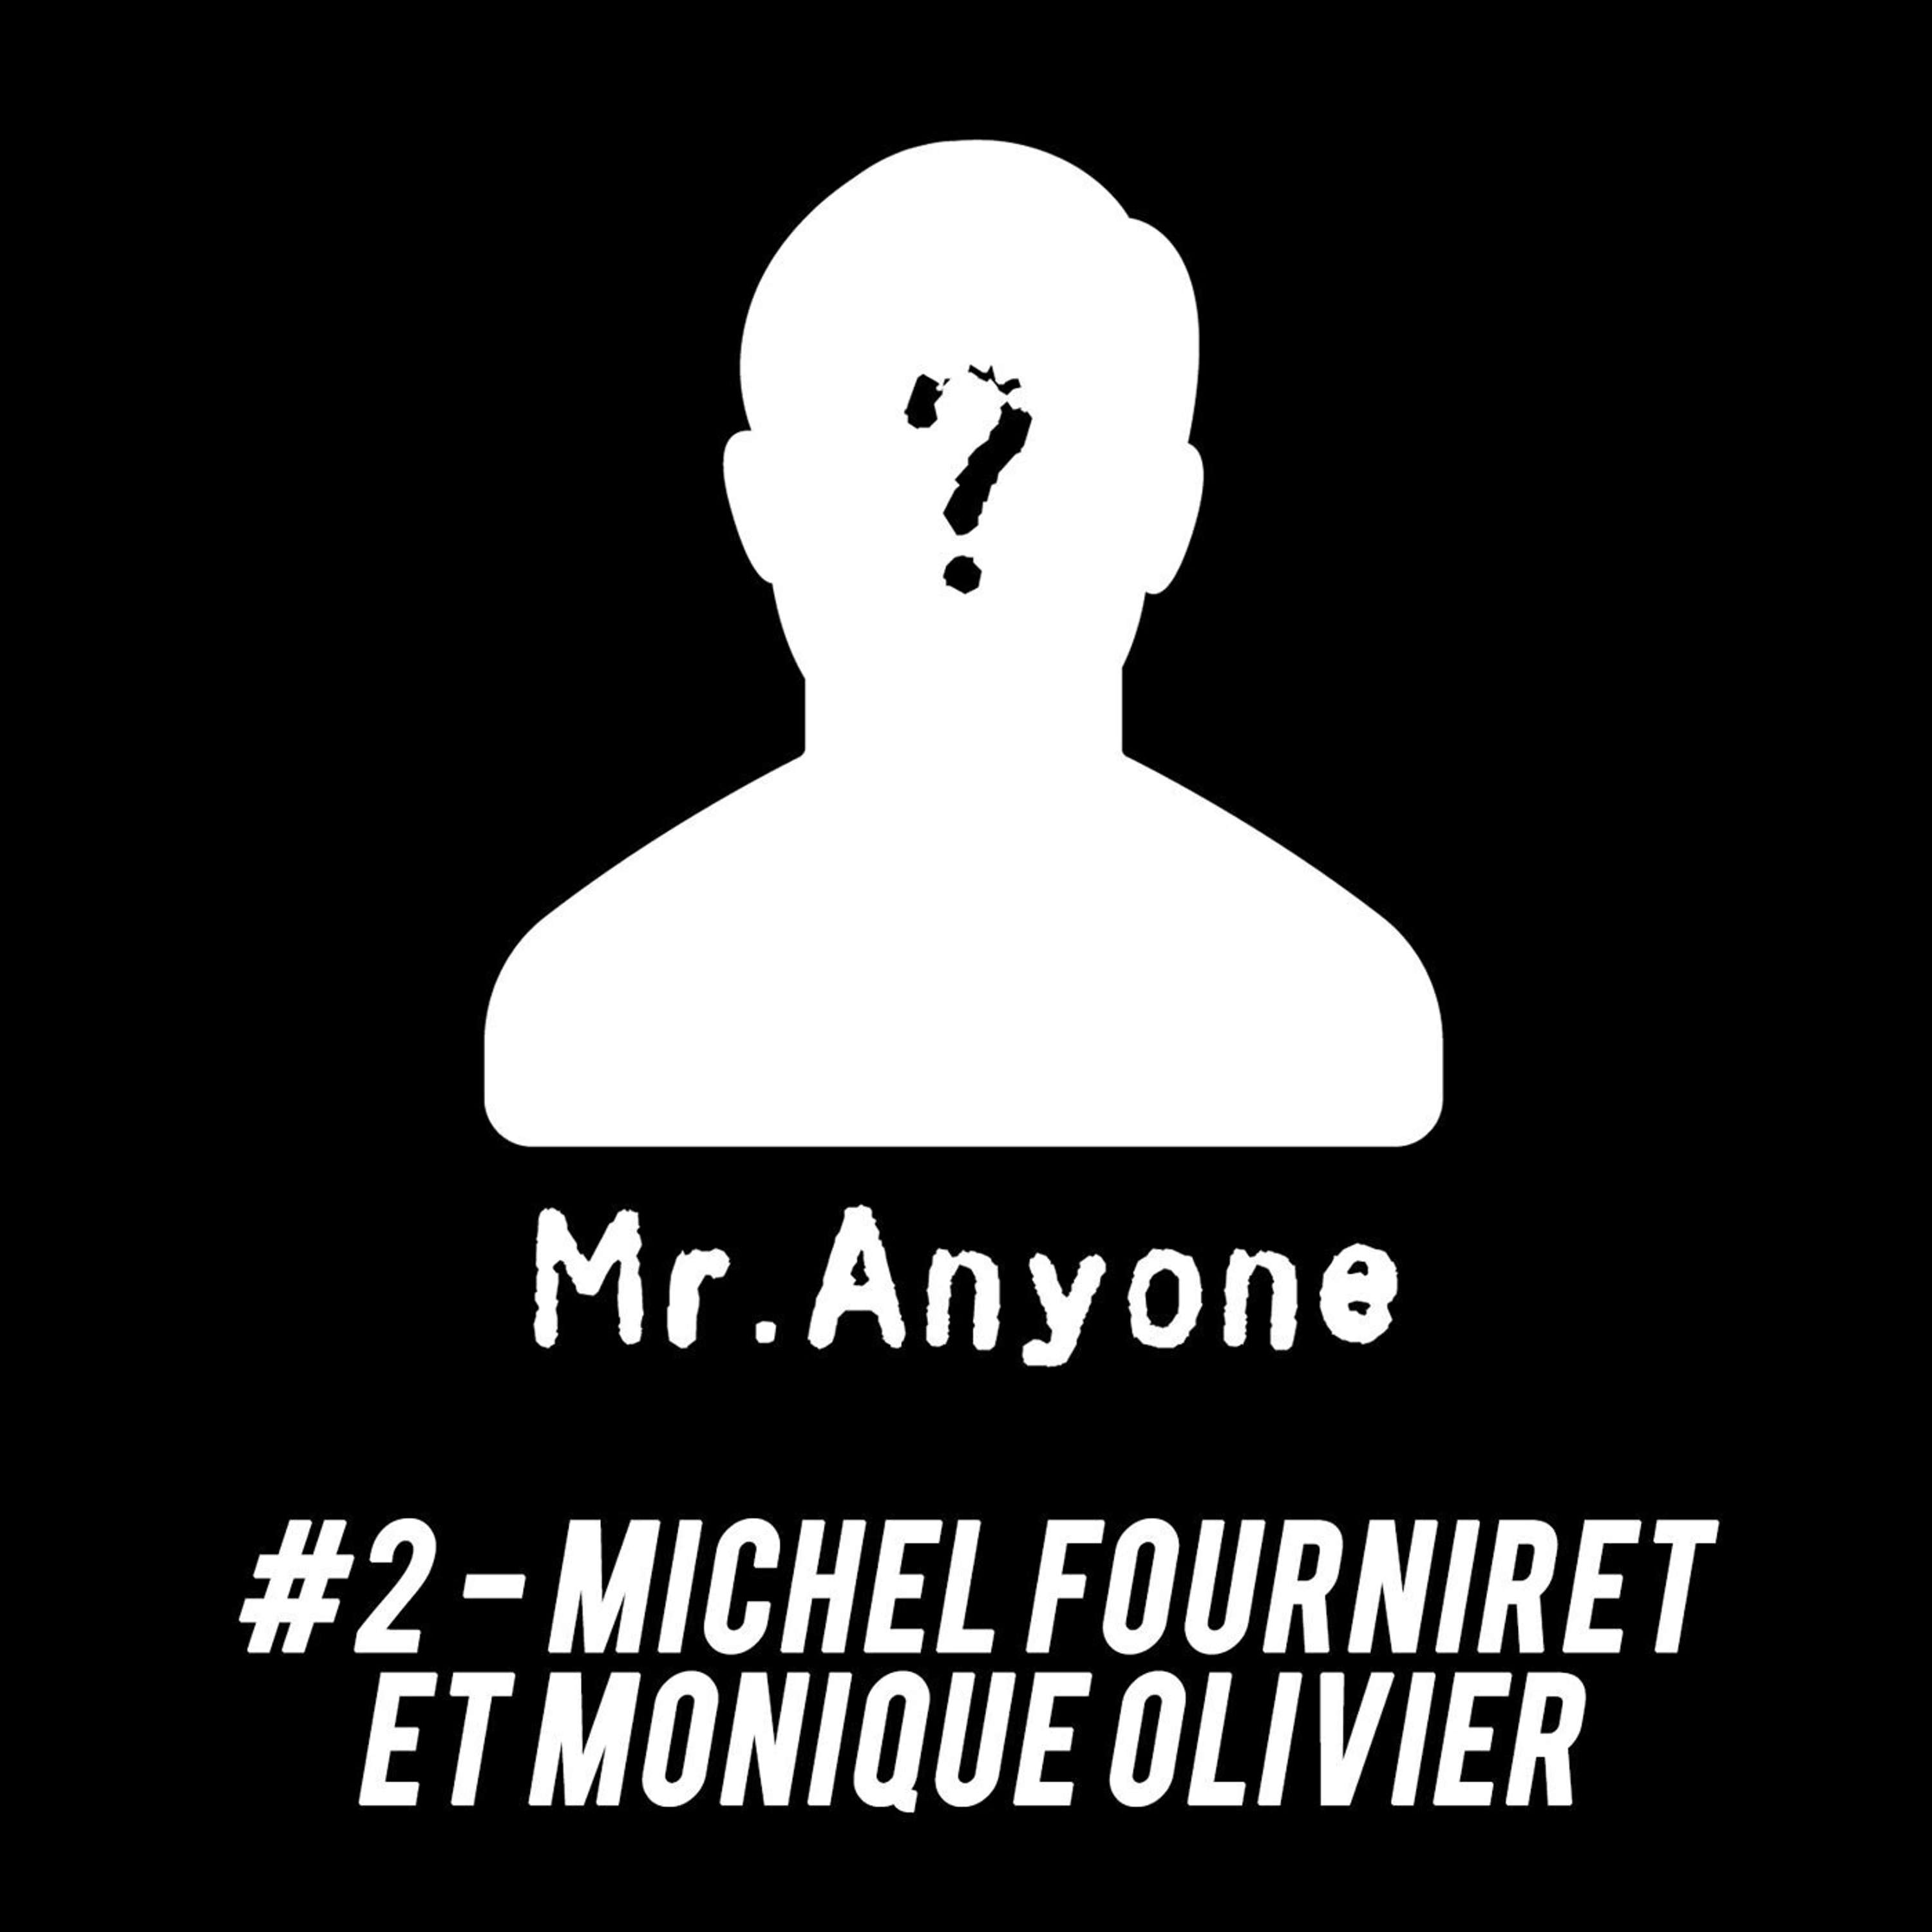 Michel Fourniret & Monique Olivier - Une perversité meurtrière rarement observée